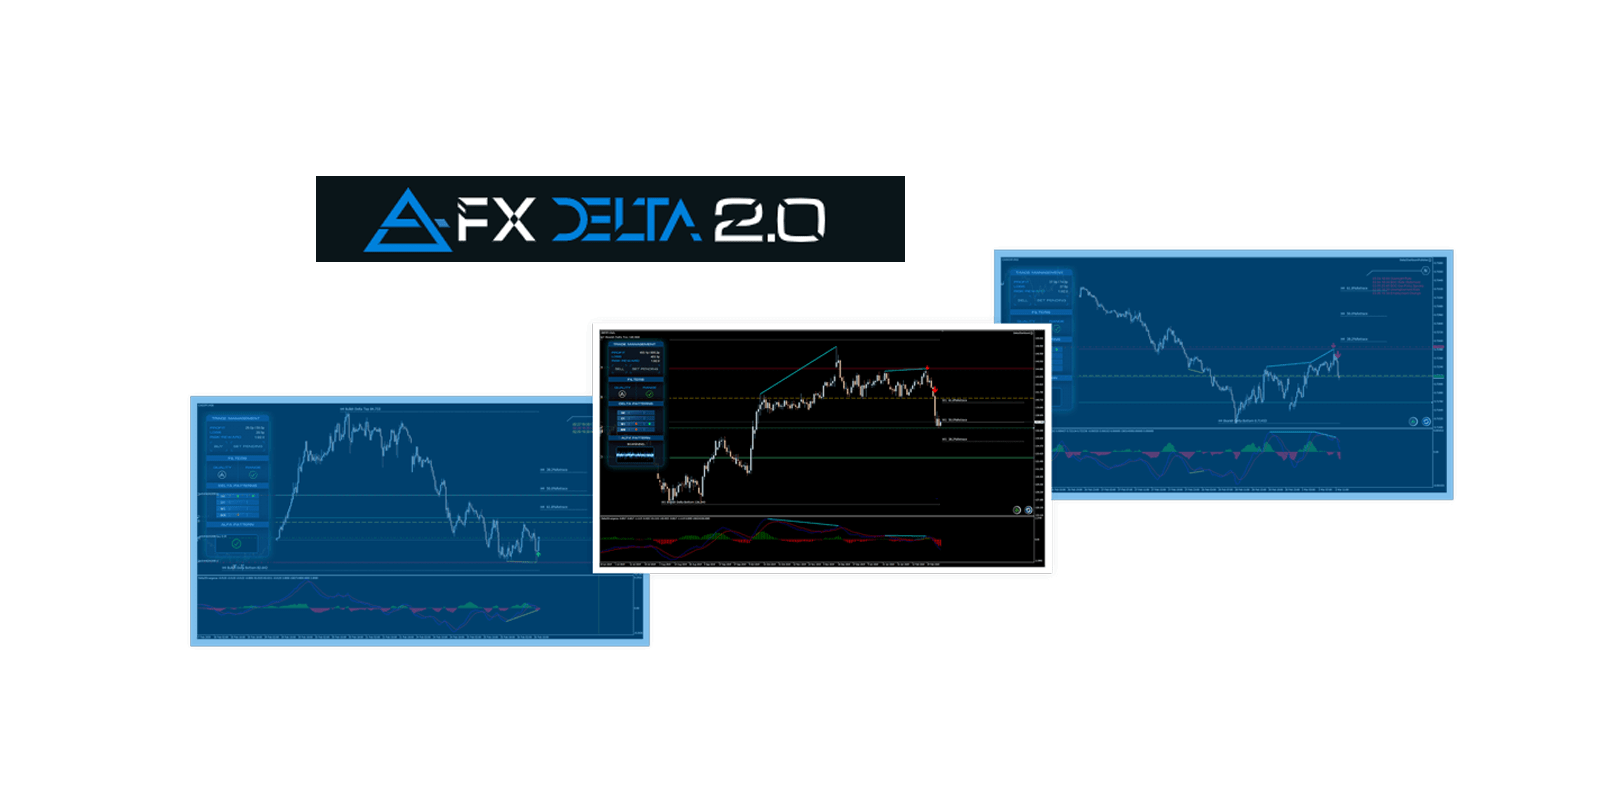 FX Delta review